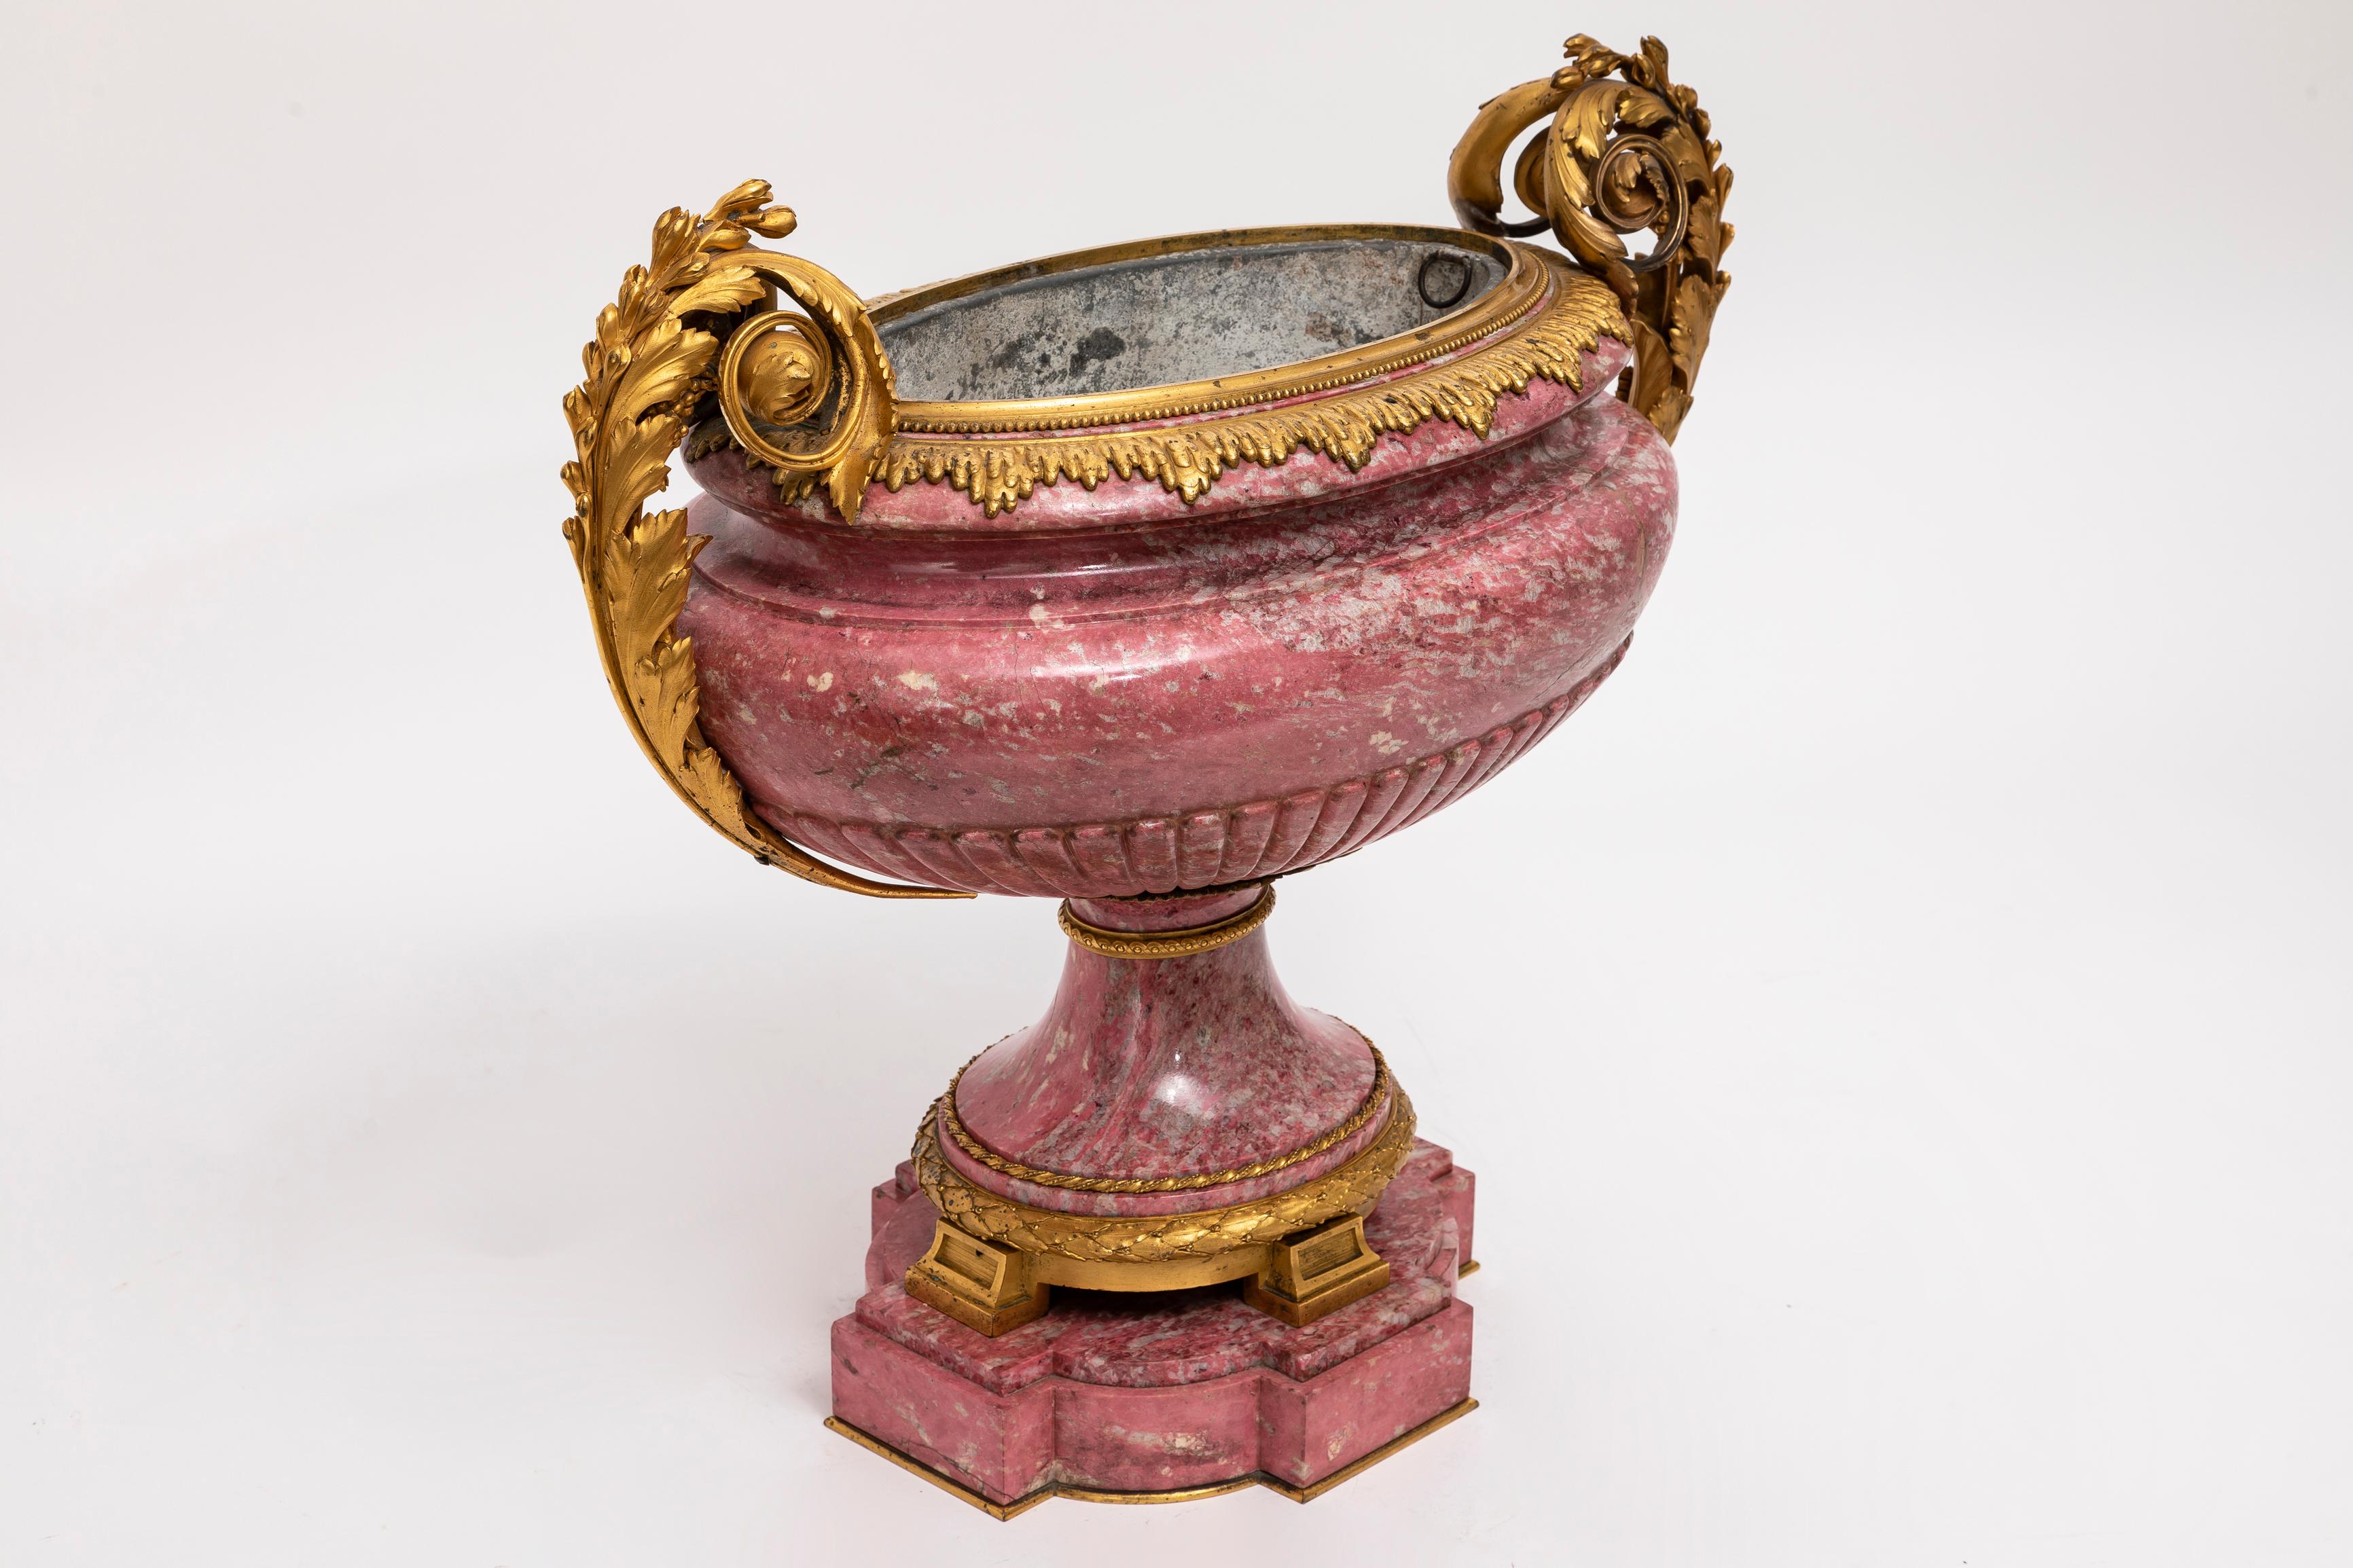  Eine fabelhafte und große 19. Jahrhundert russische Ormolu-montiert Hand geschnitzt rosa Rhodonit Tazza / Mittelstück.  Diese Tazza ist ein Meisterwerk der Opulenz, das den Höhepunkt der russischen Kunst verkörpert. Diese elegante Tazza verbindet